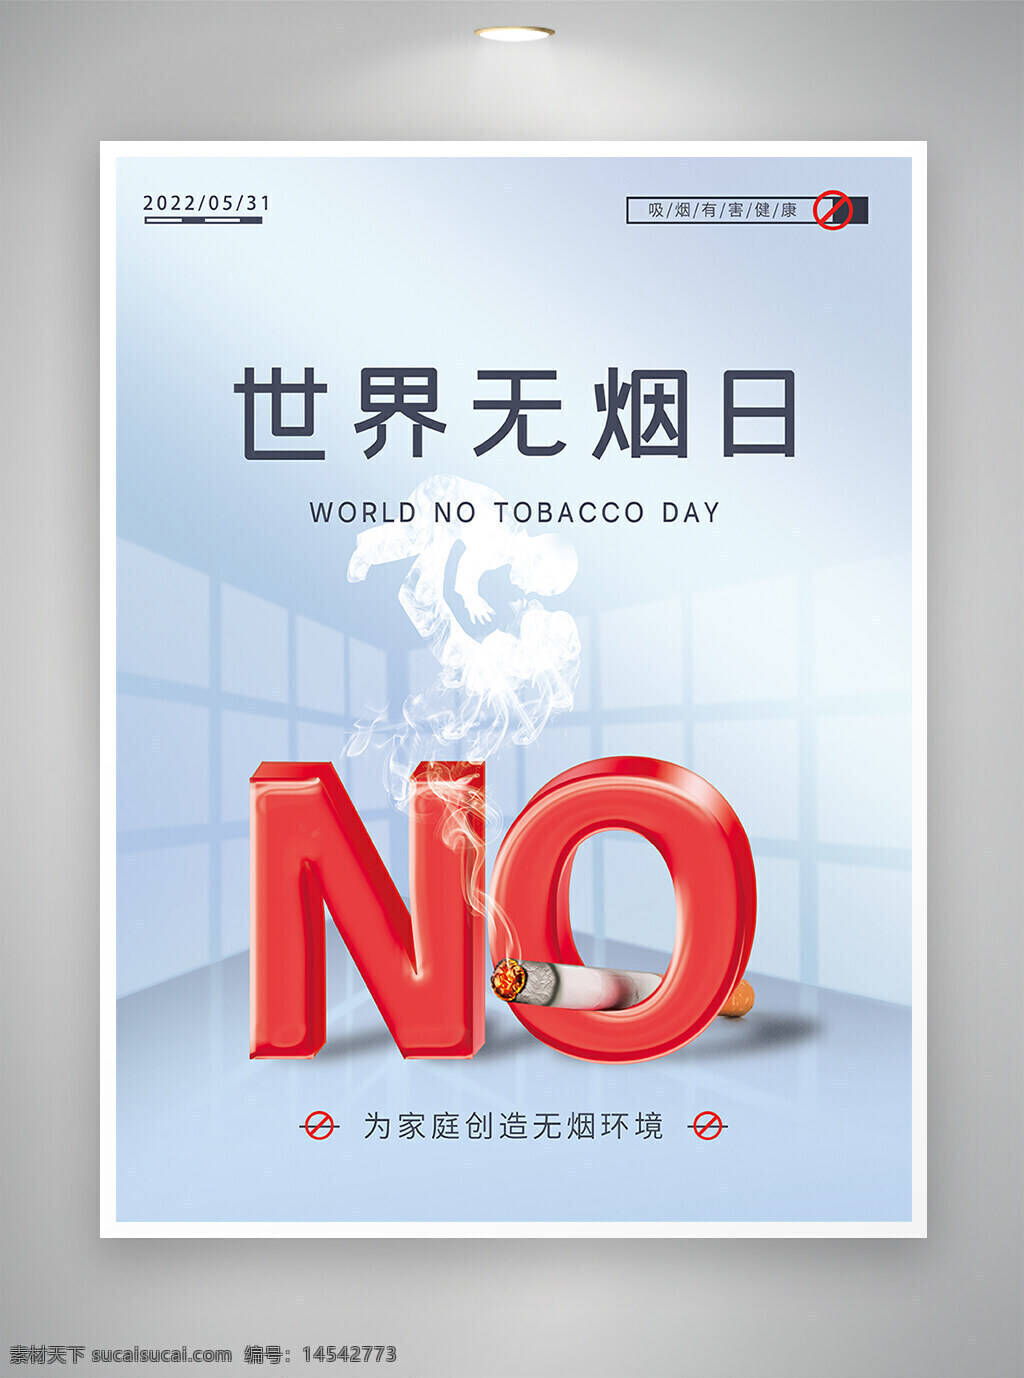 无烟日 无烟日海报 世界无烟日 世界无烟日宣传 世界无烟日海报 宣传海报 海报